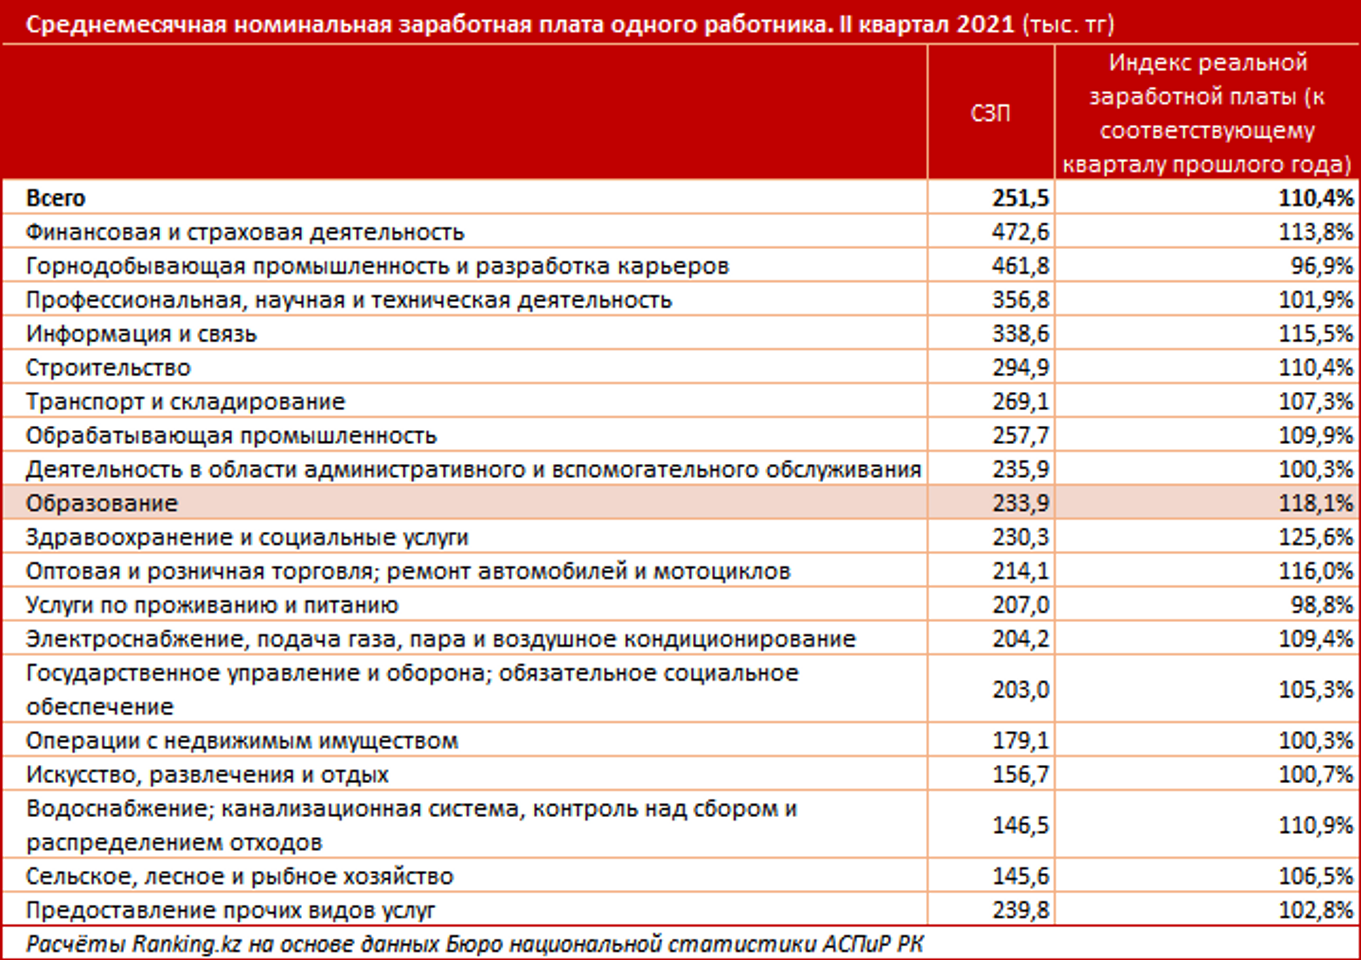 Каждый пятый студент в России из Казахстана - исследование 1027362 - Kapital.kz